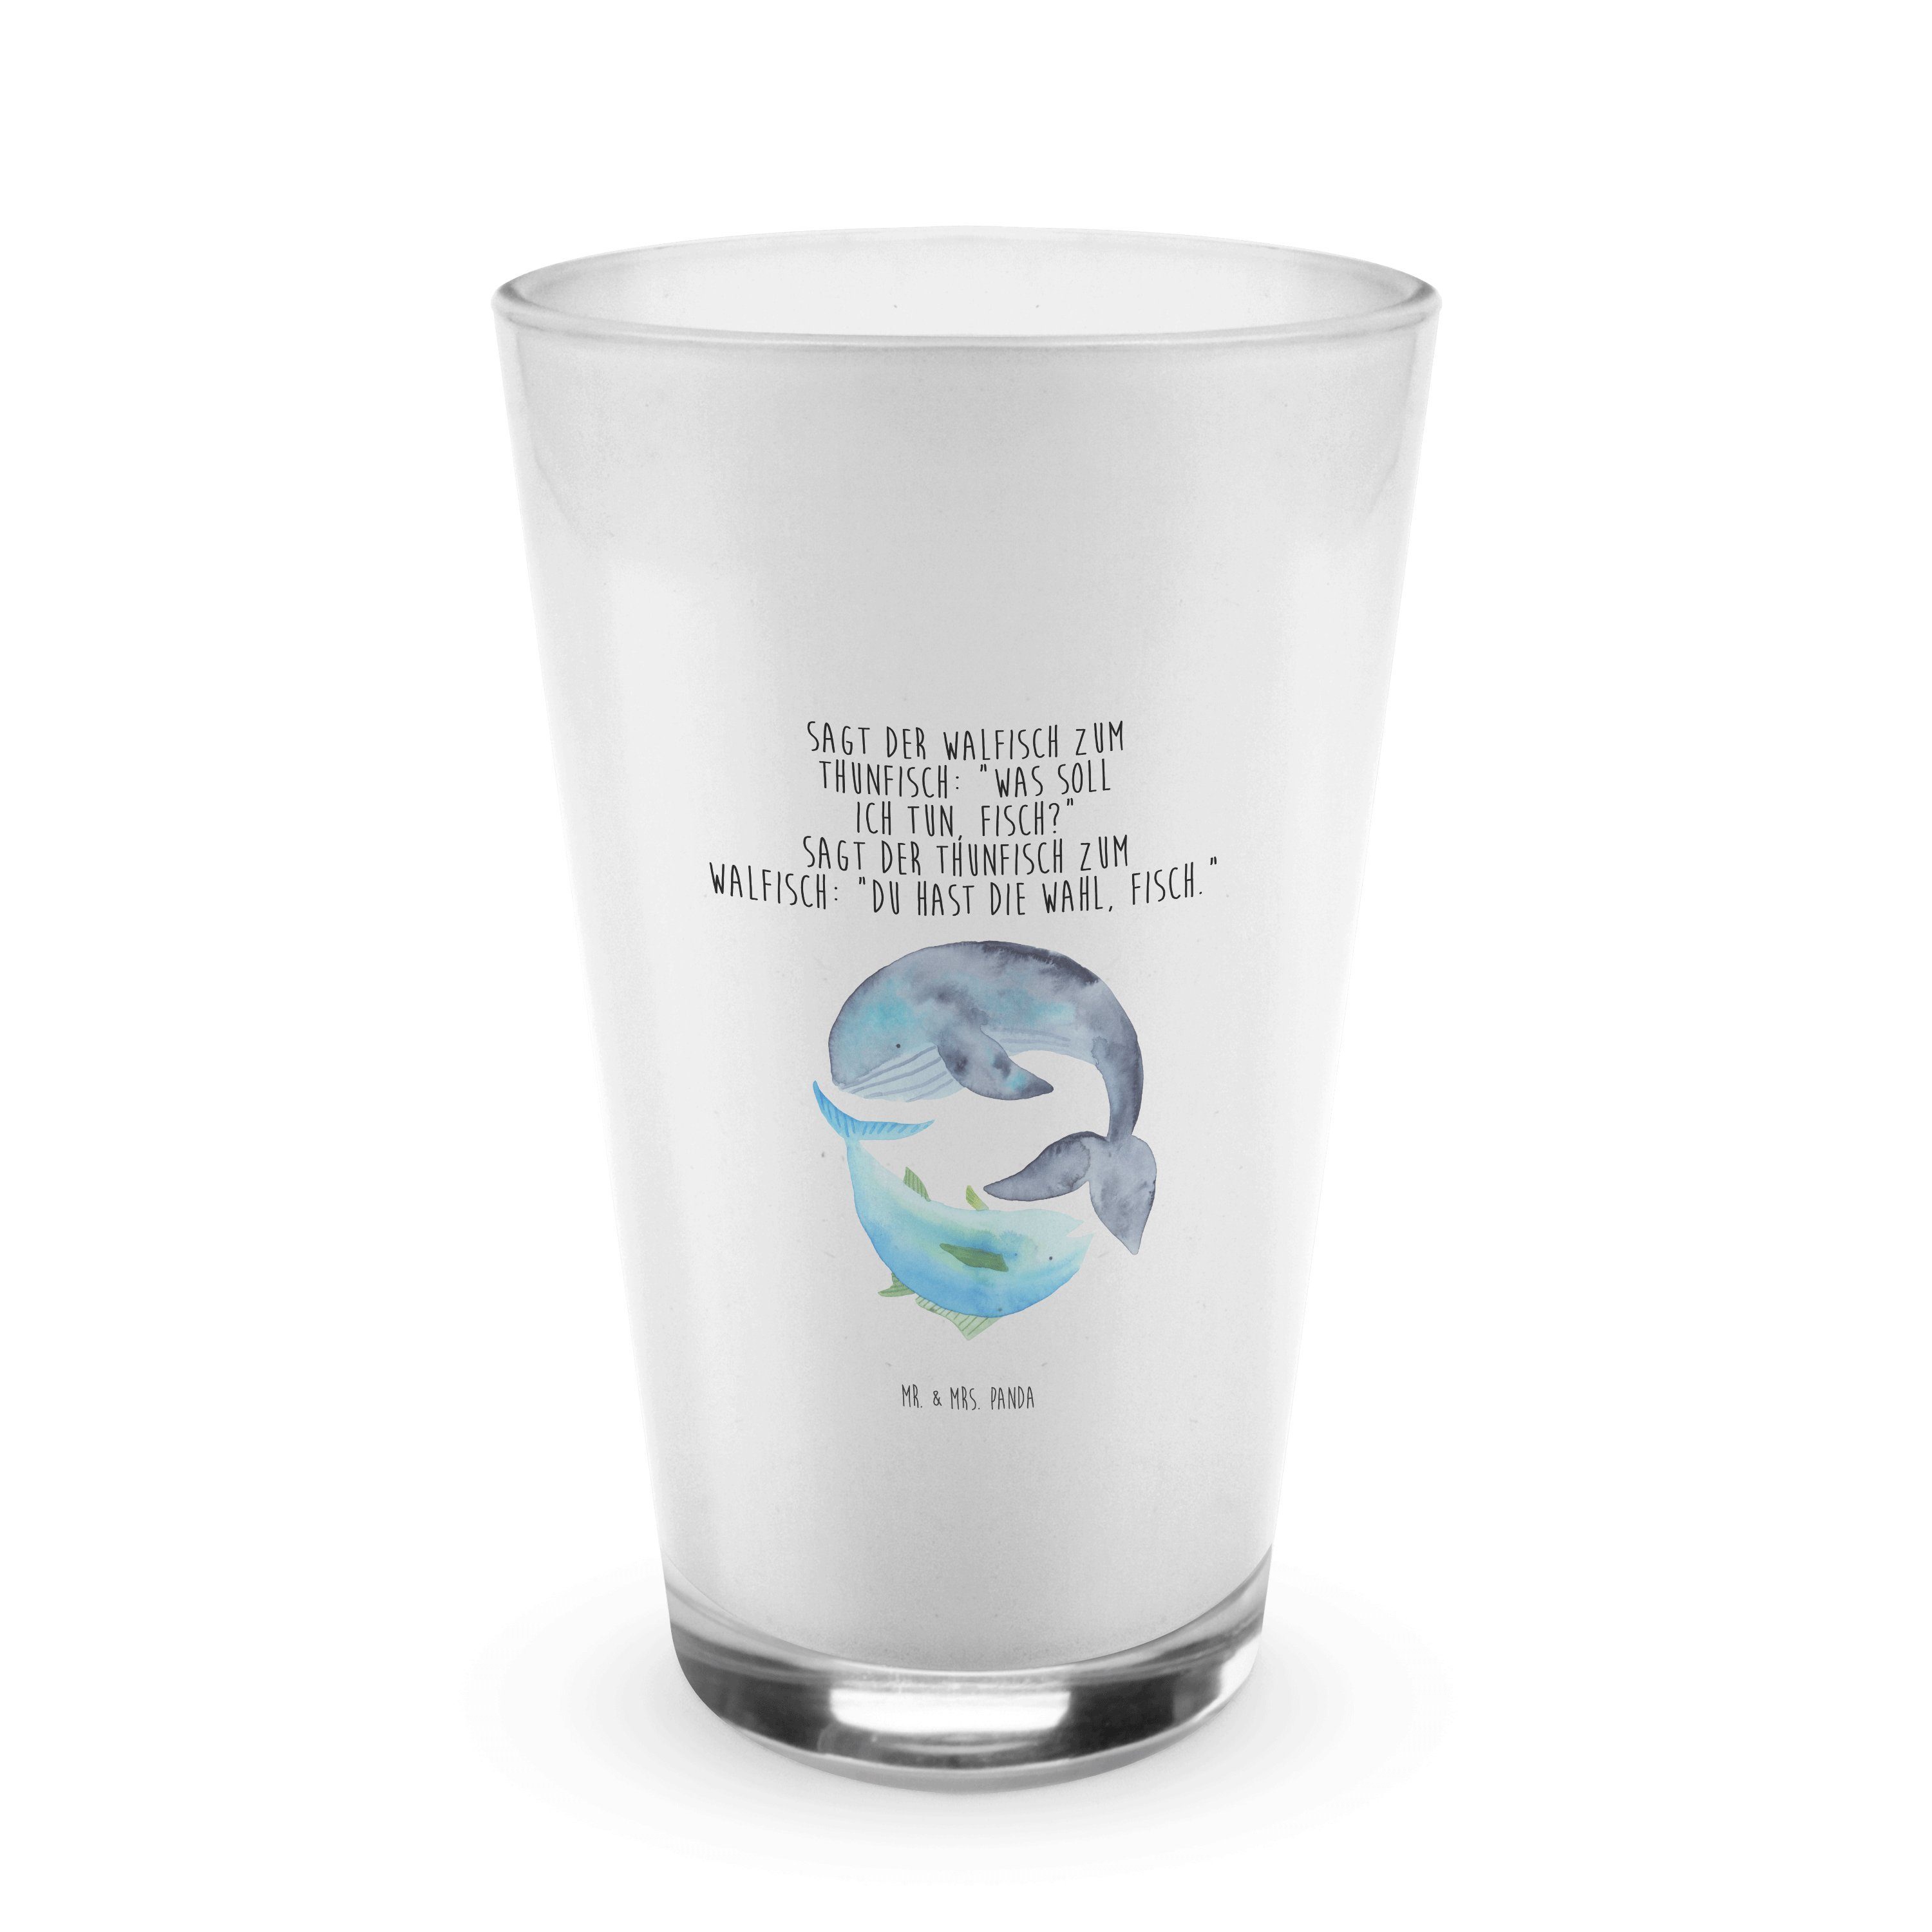 Sprüche, & lustige - Mr. Premium Walfisch Thunfisch Geschenk, Panda Transparent Glas - & Mrs. Glas Flach,